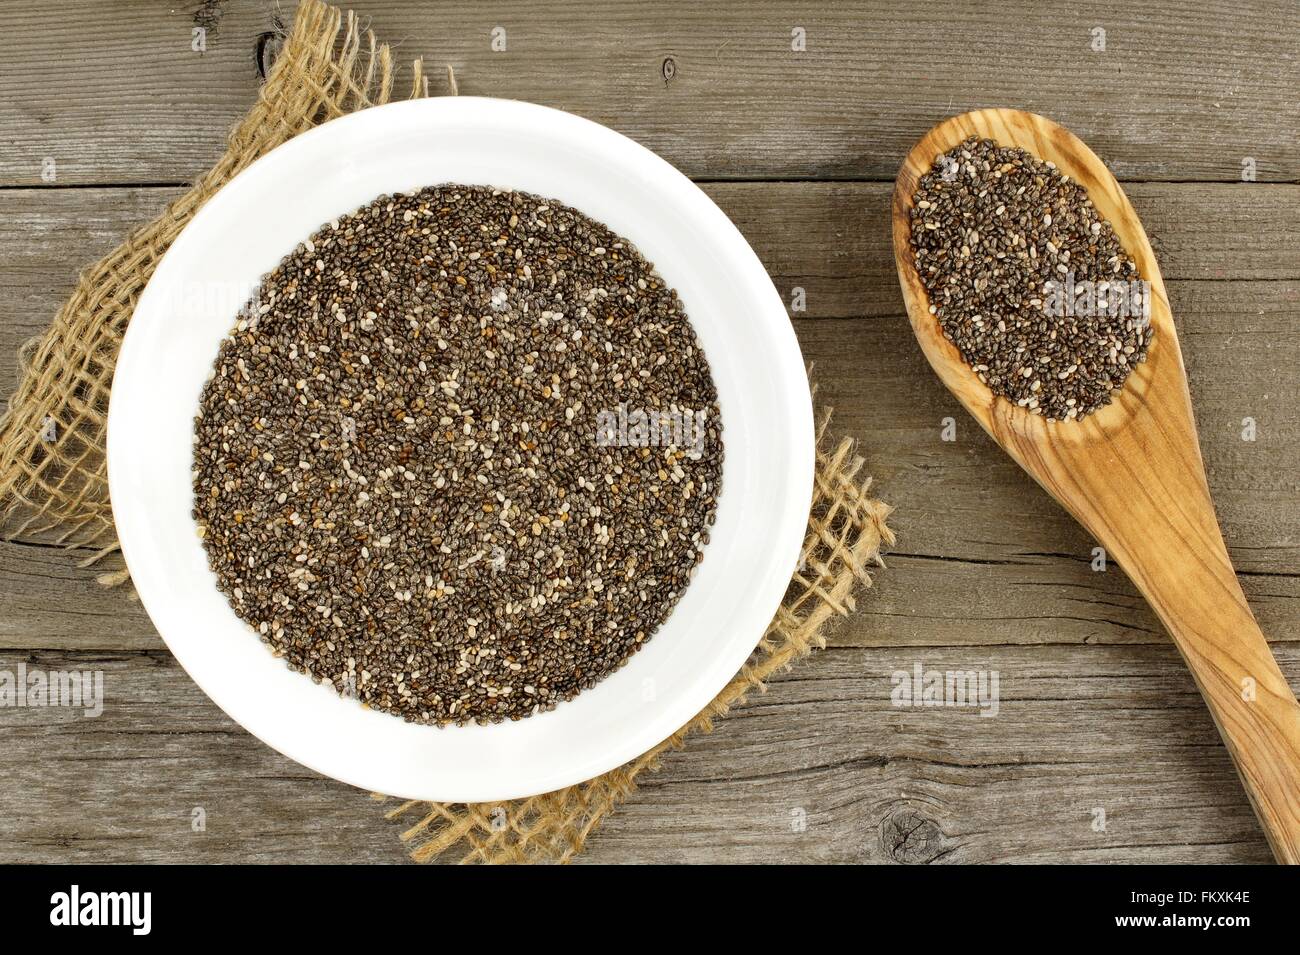 Ciotola e cucchiaio riempito con semi di chia su uno sfondo di legno Foto Stock